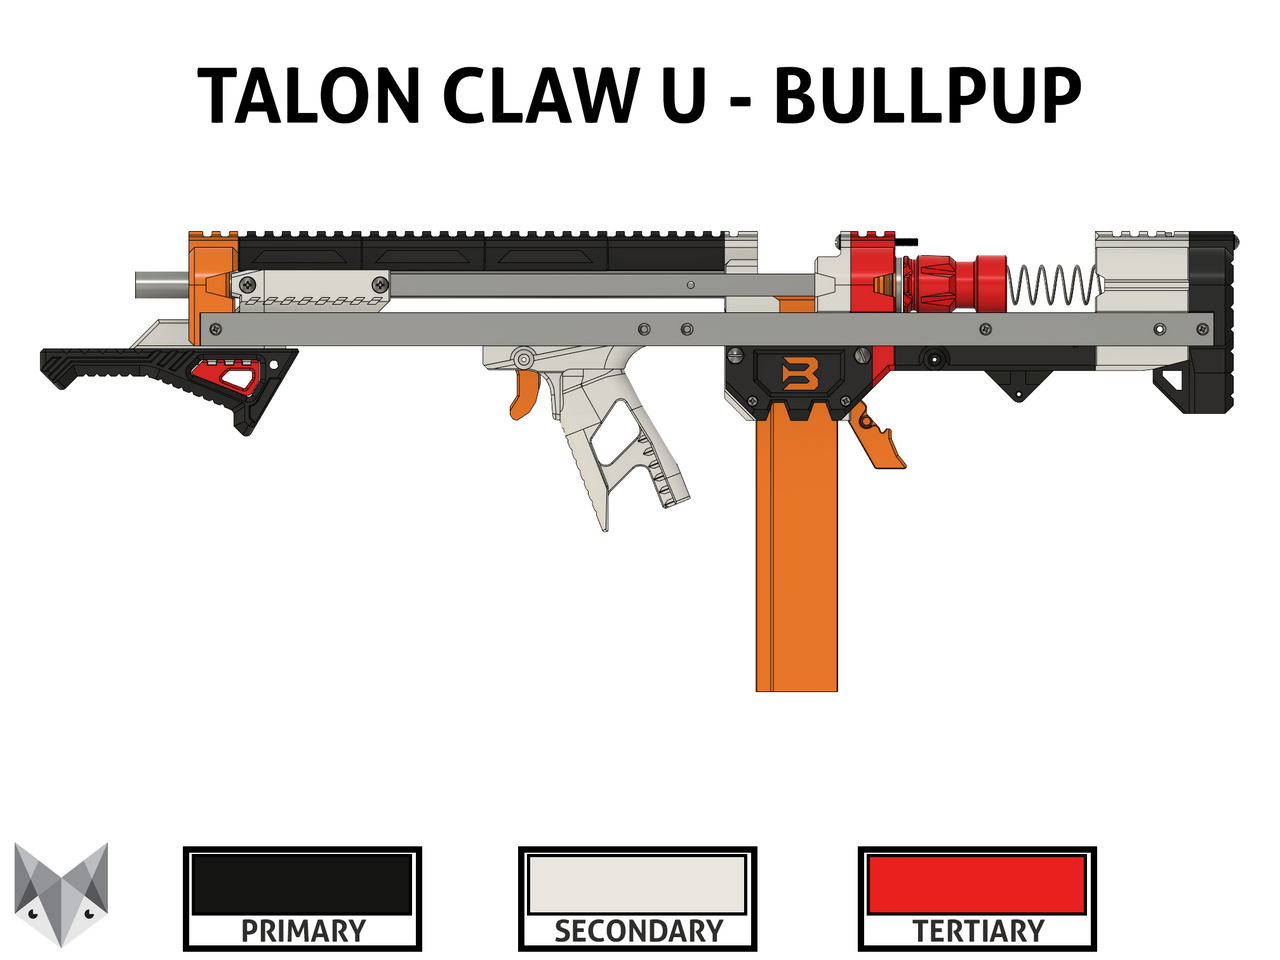 Talon Claw U - Bullpup